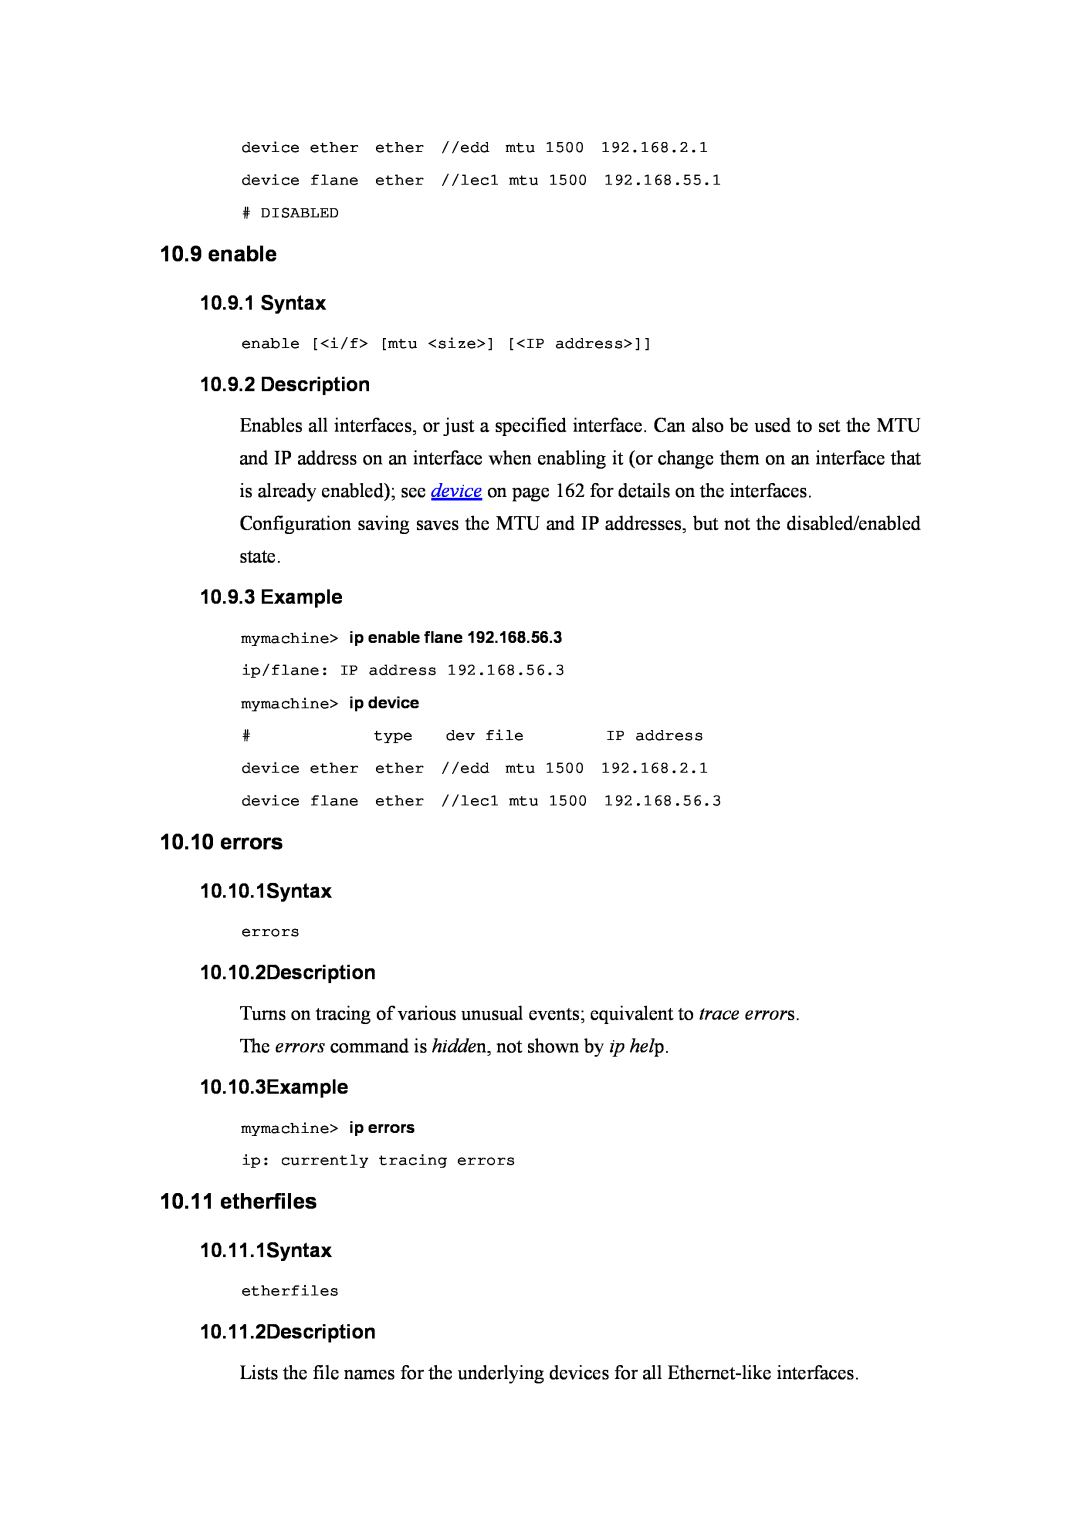 Atlantis Land A02-RA(Atmos)_ME01 manual enable, errors, etherfiles, Example, 10.10.1Syntax, 10.10.2Description 